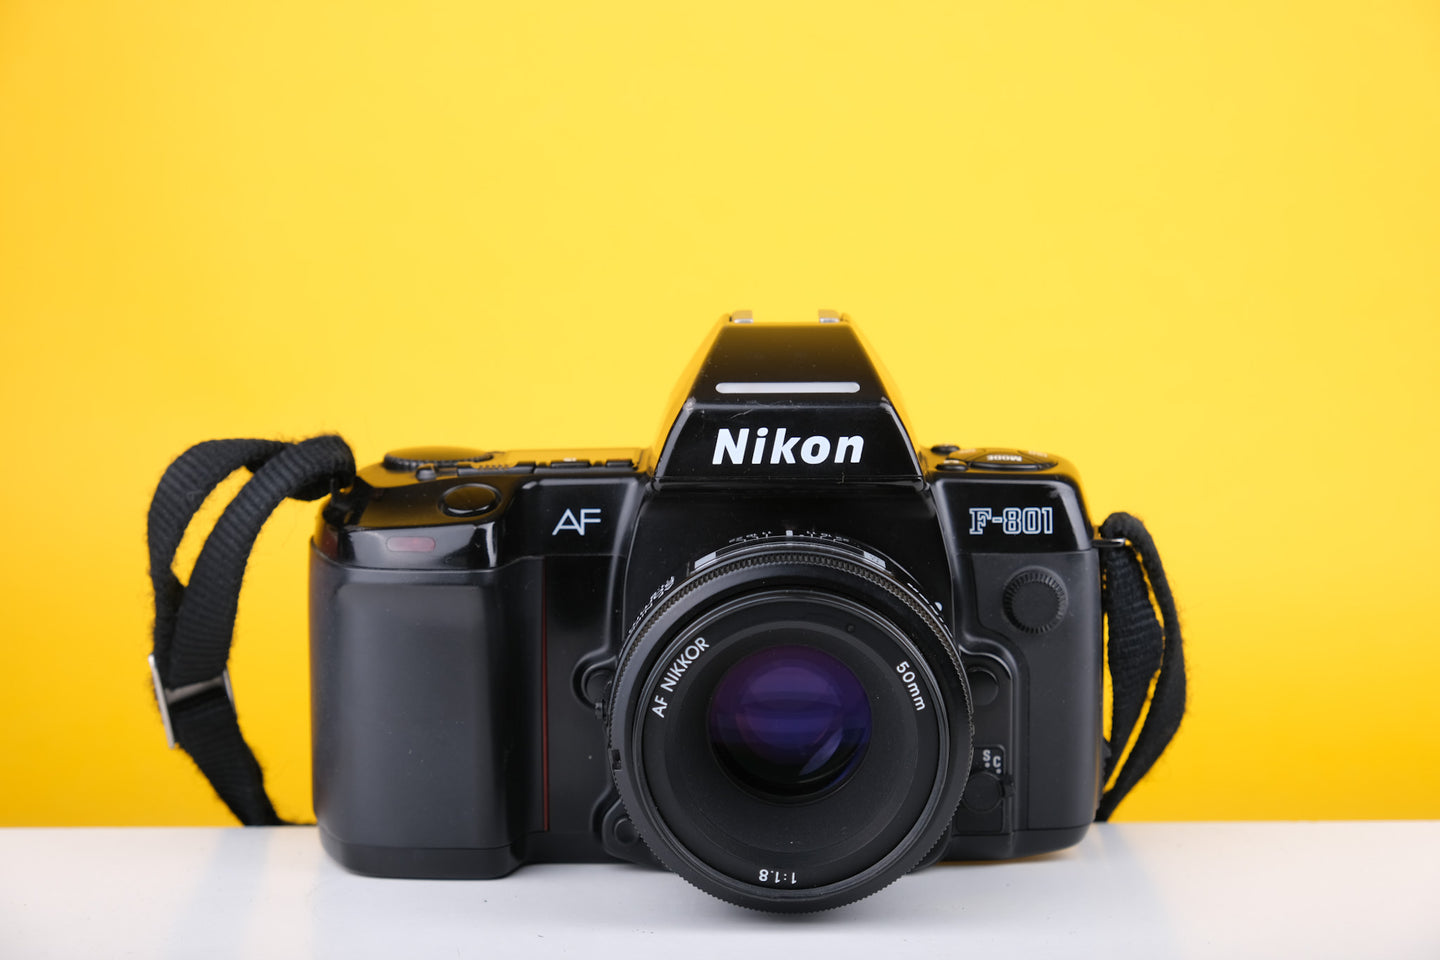 Nikon AF F801 35mm SLR Film Camera with 50mm f1.8